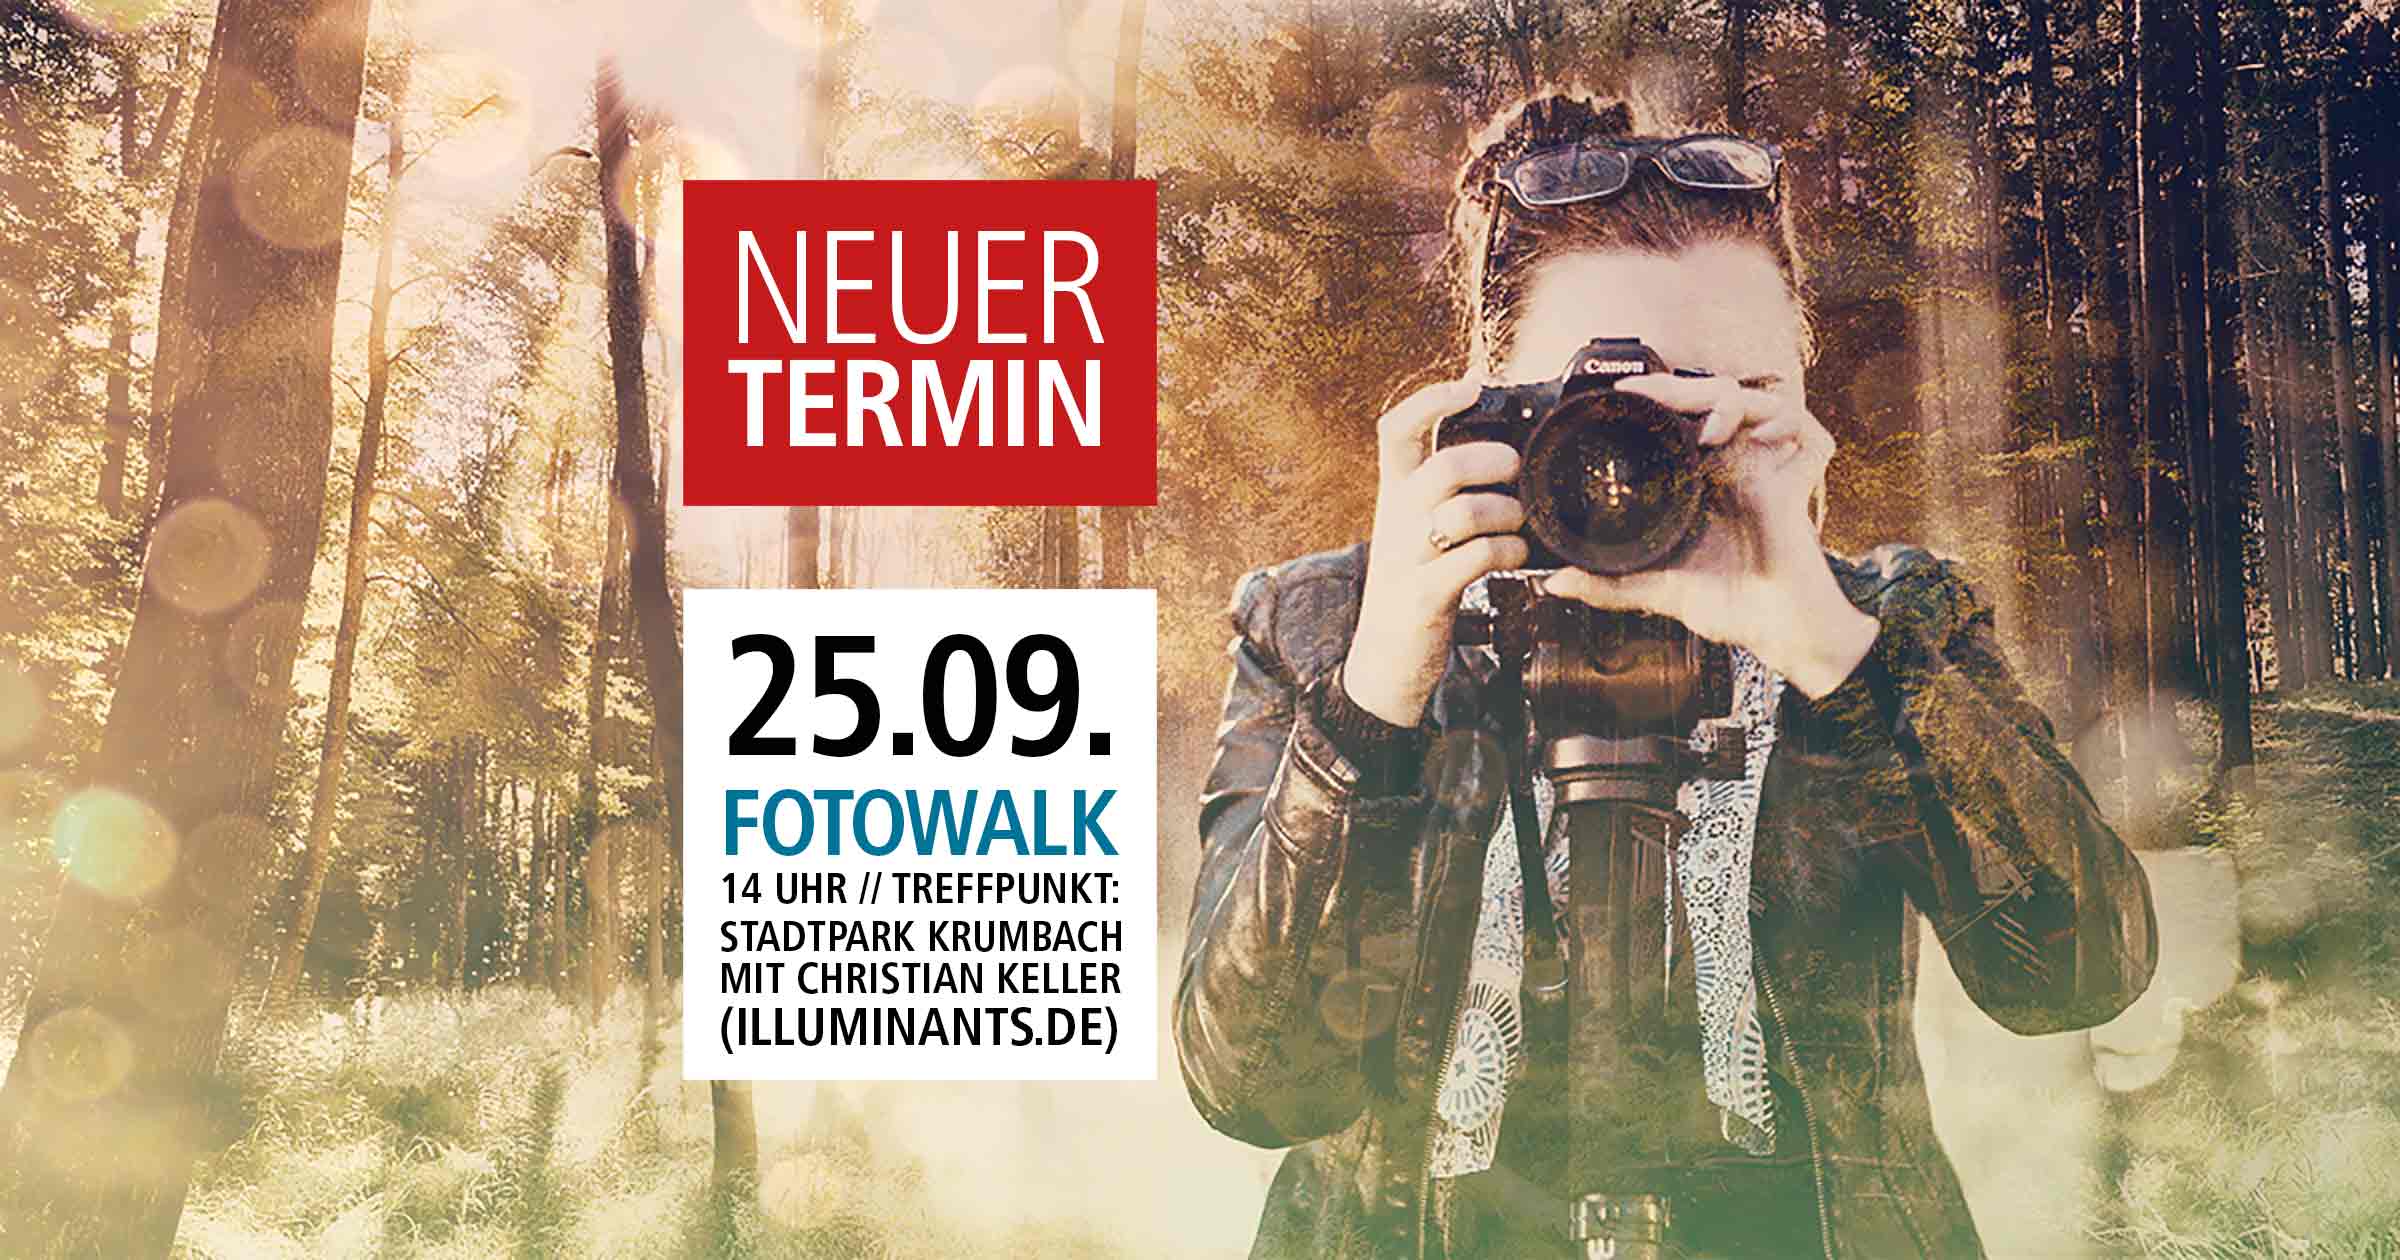 Fotowalk Lokal-Forum Krumbach mit Christian Keller von Illuminants.de - Termin verschoben